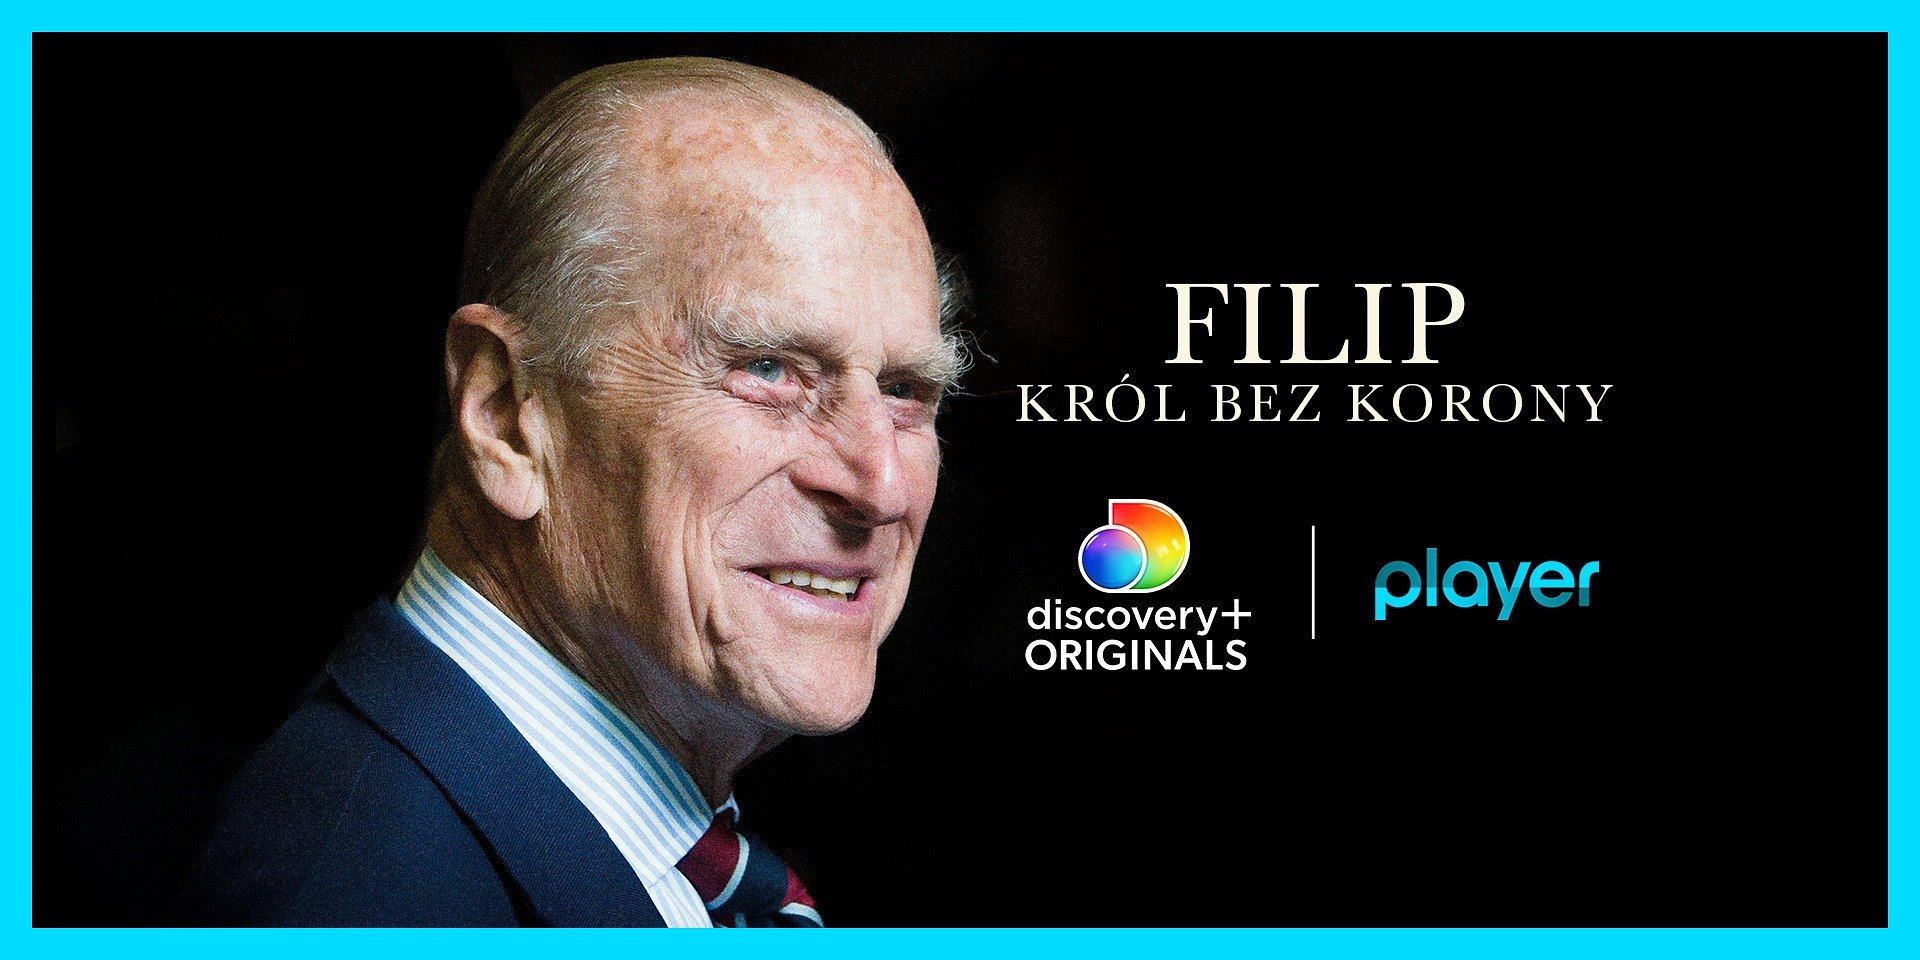 Nowy film discovery+ Originals „Filip: Król bez korony” już do obejrzenia w Player! Opowiada o życiu zmarłego Księcia Filipa